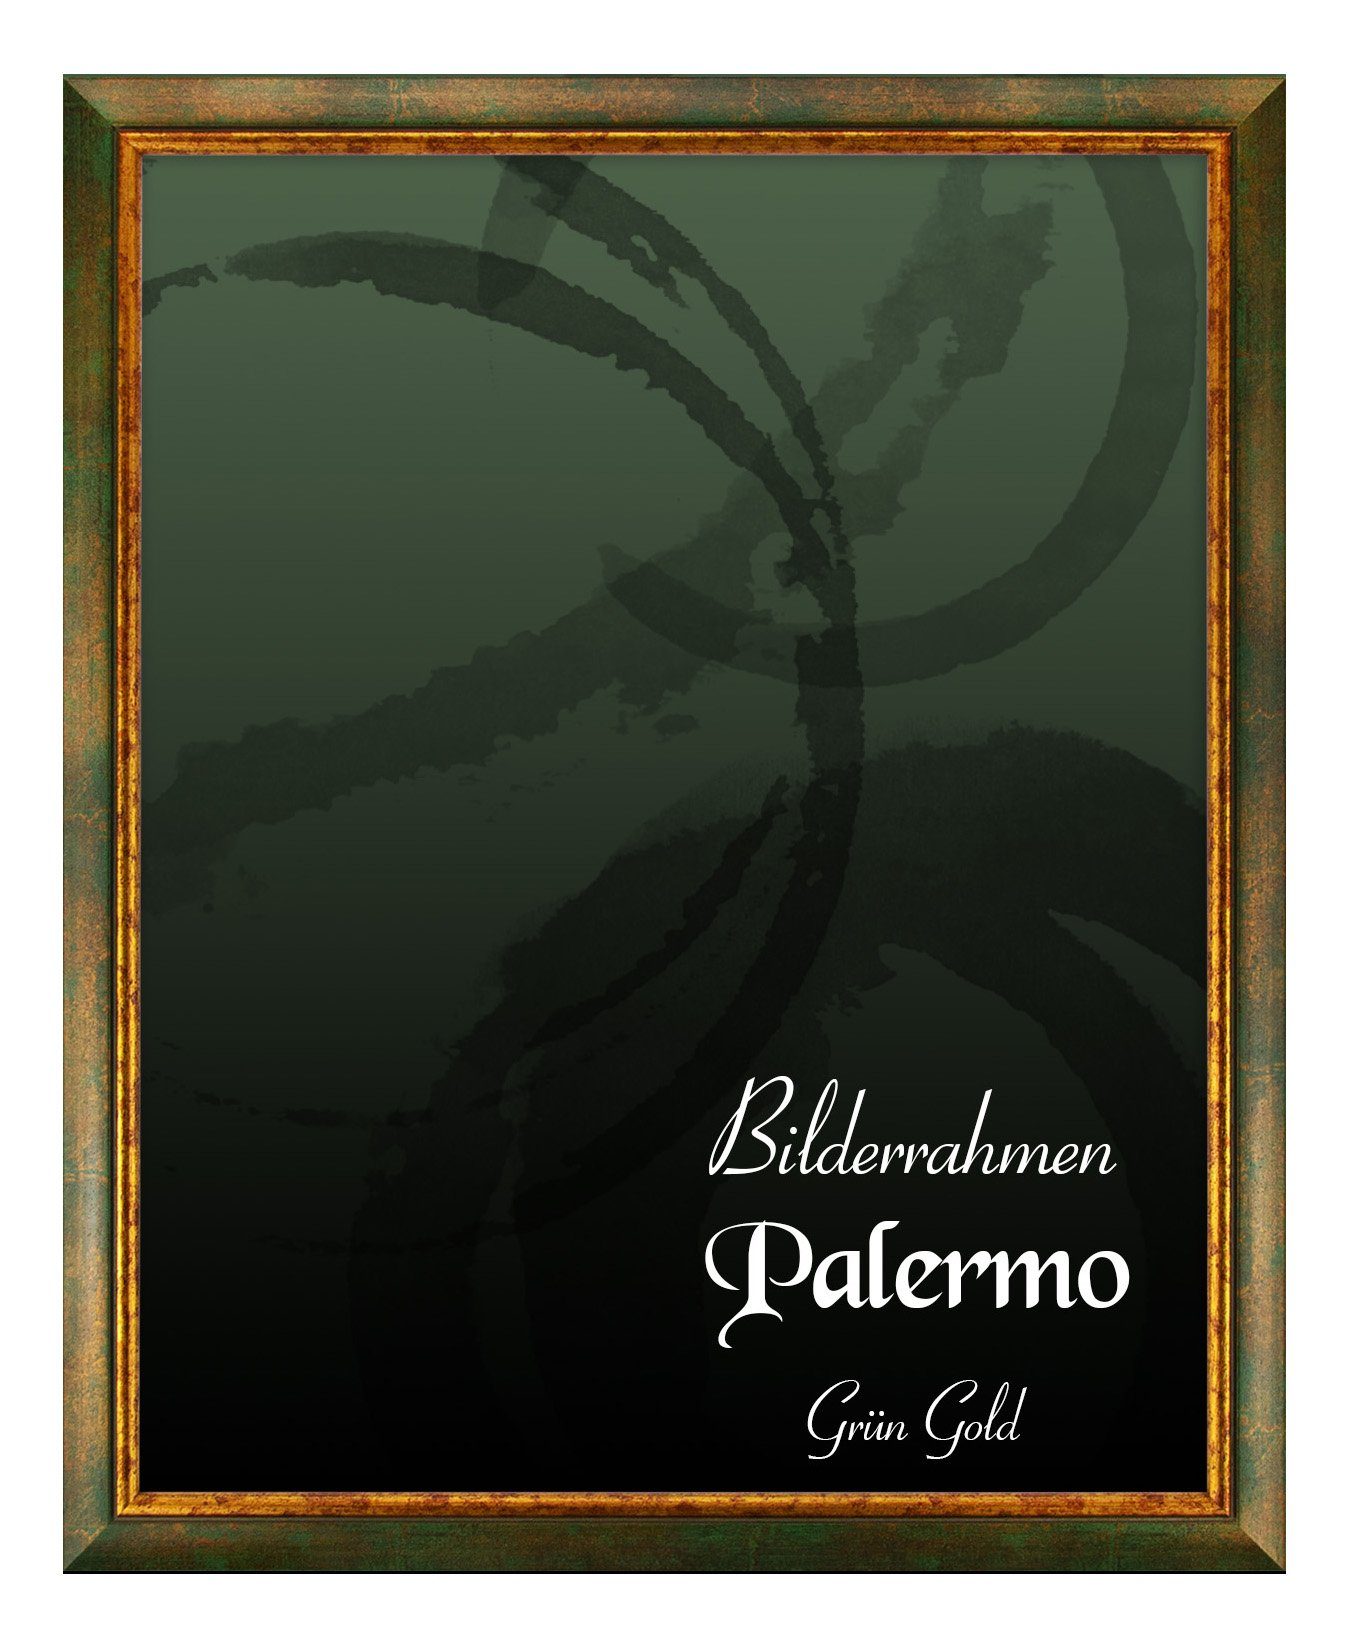 BIRAPA Einzelrahmen Bilderrahmen Palermo, (1 Stück), 40x55 cm, Grün Gold, Holz